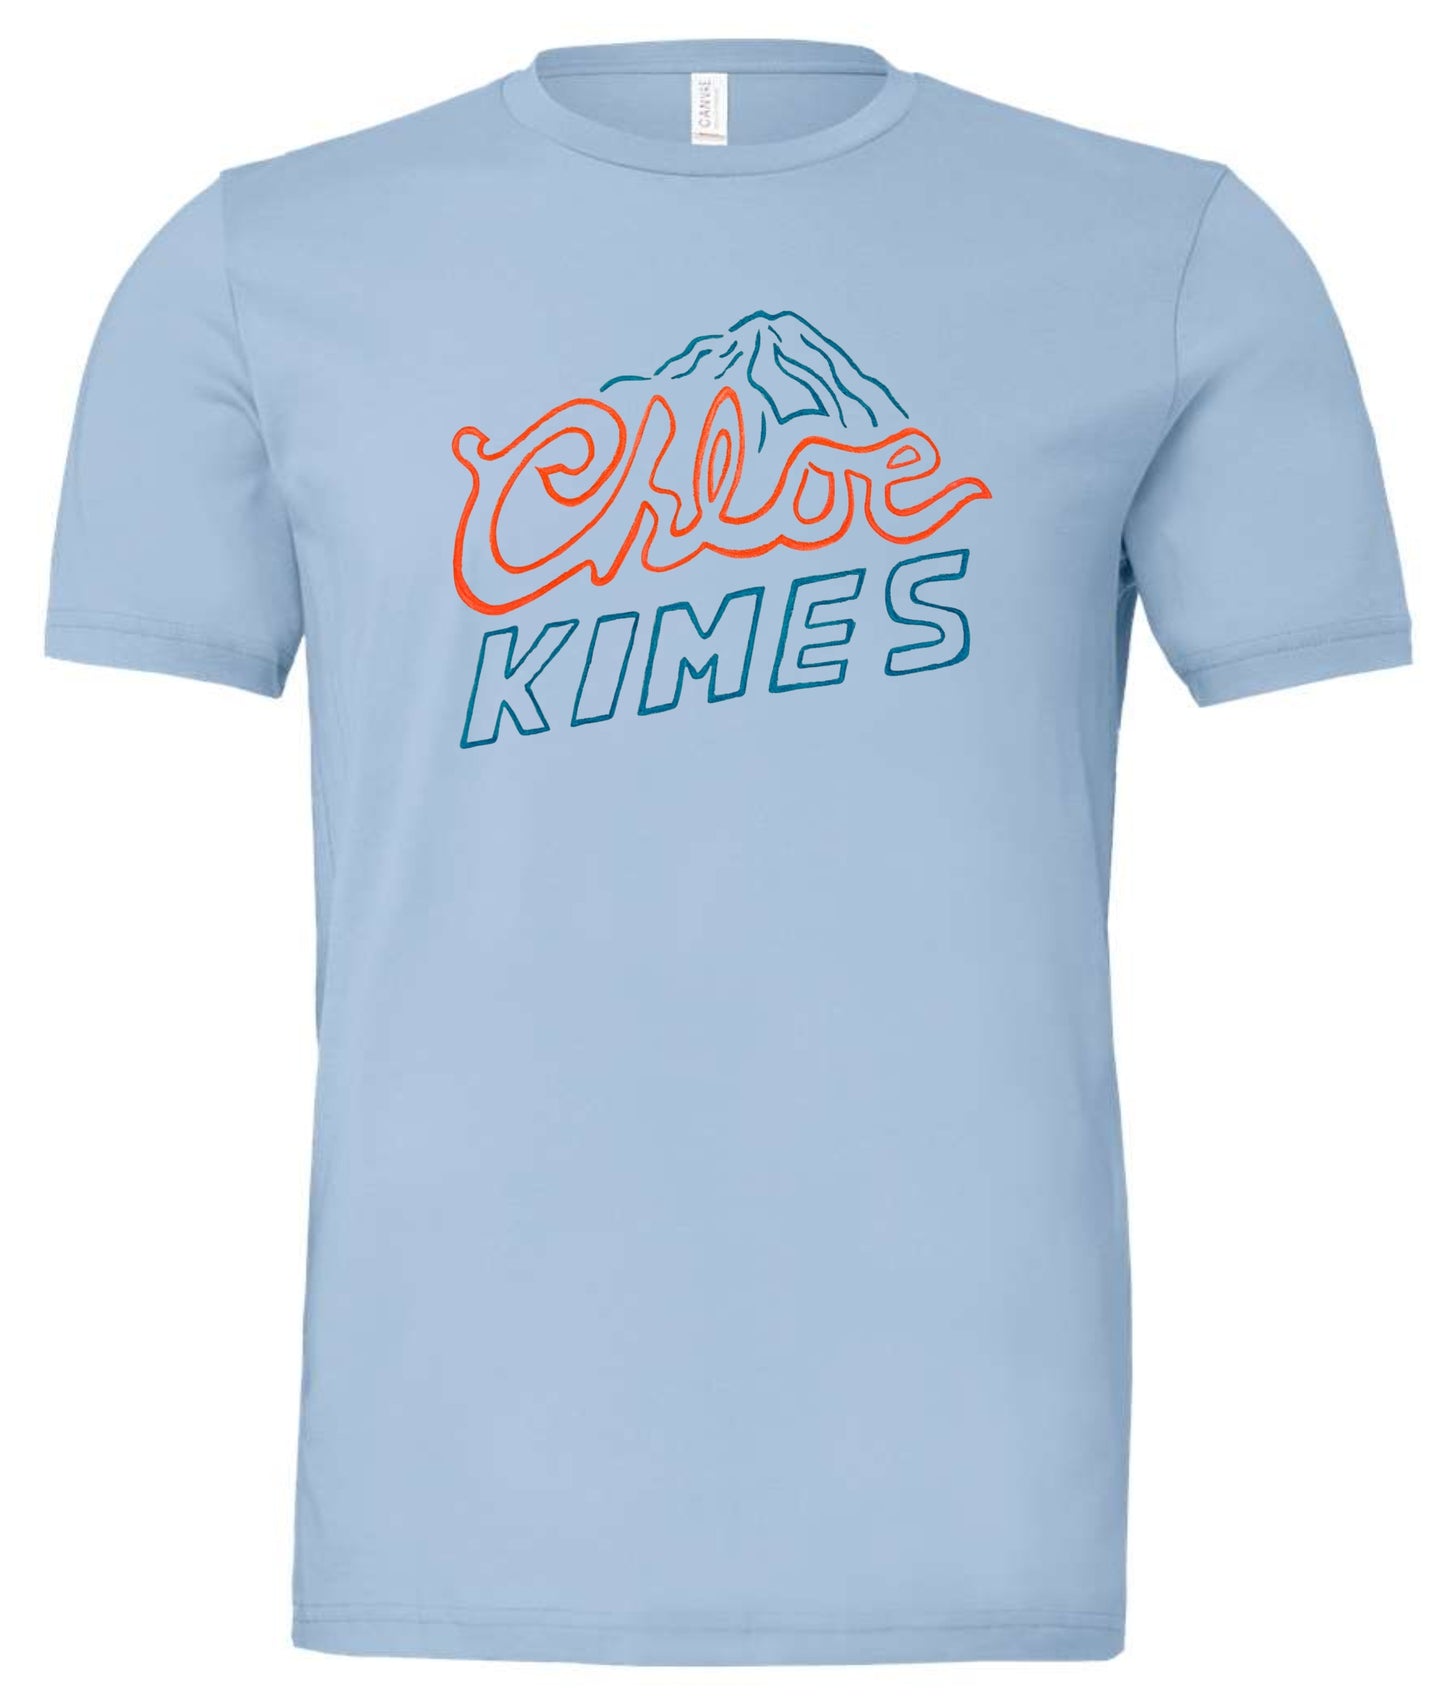 Chloe Kimes T-shirt